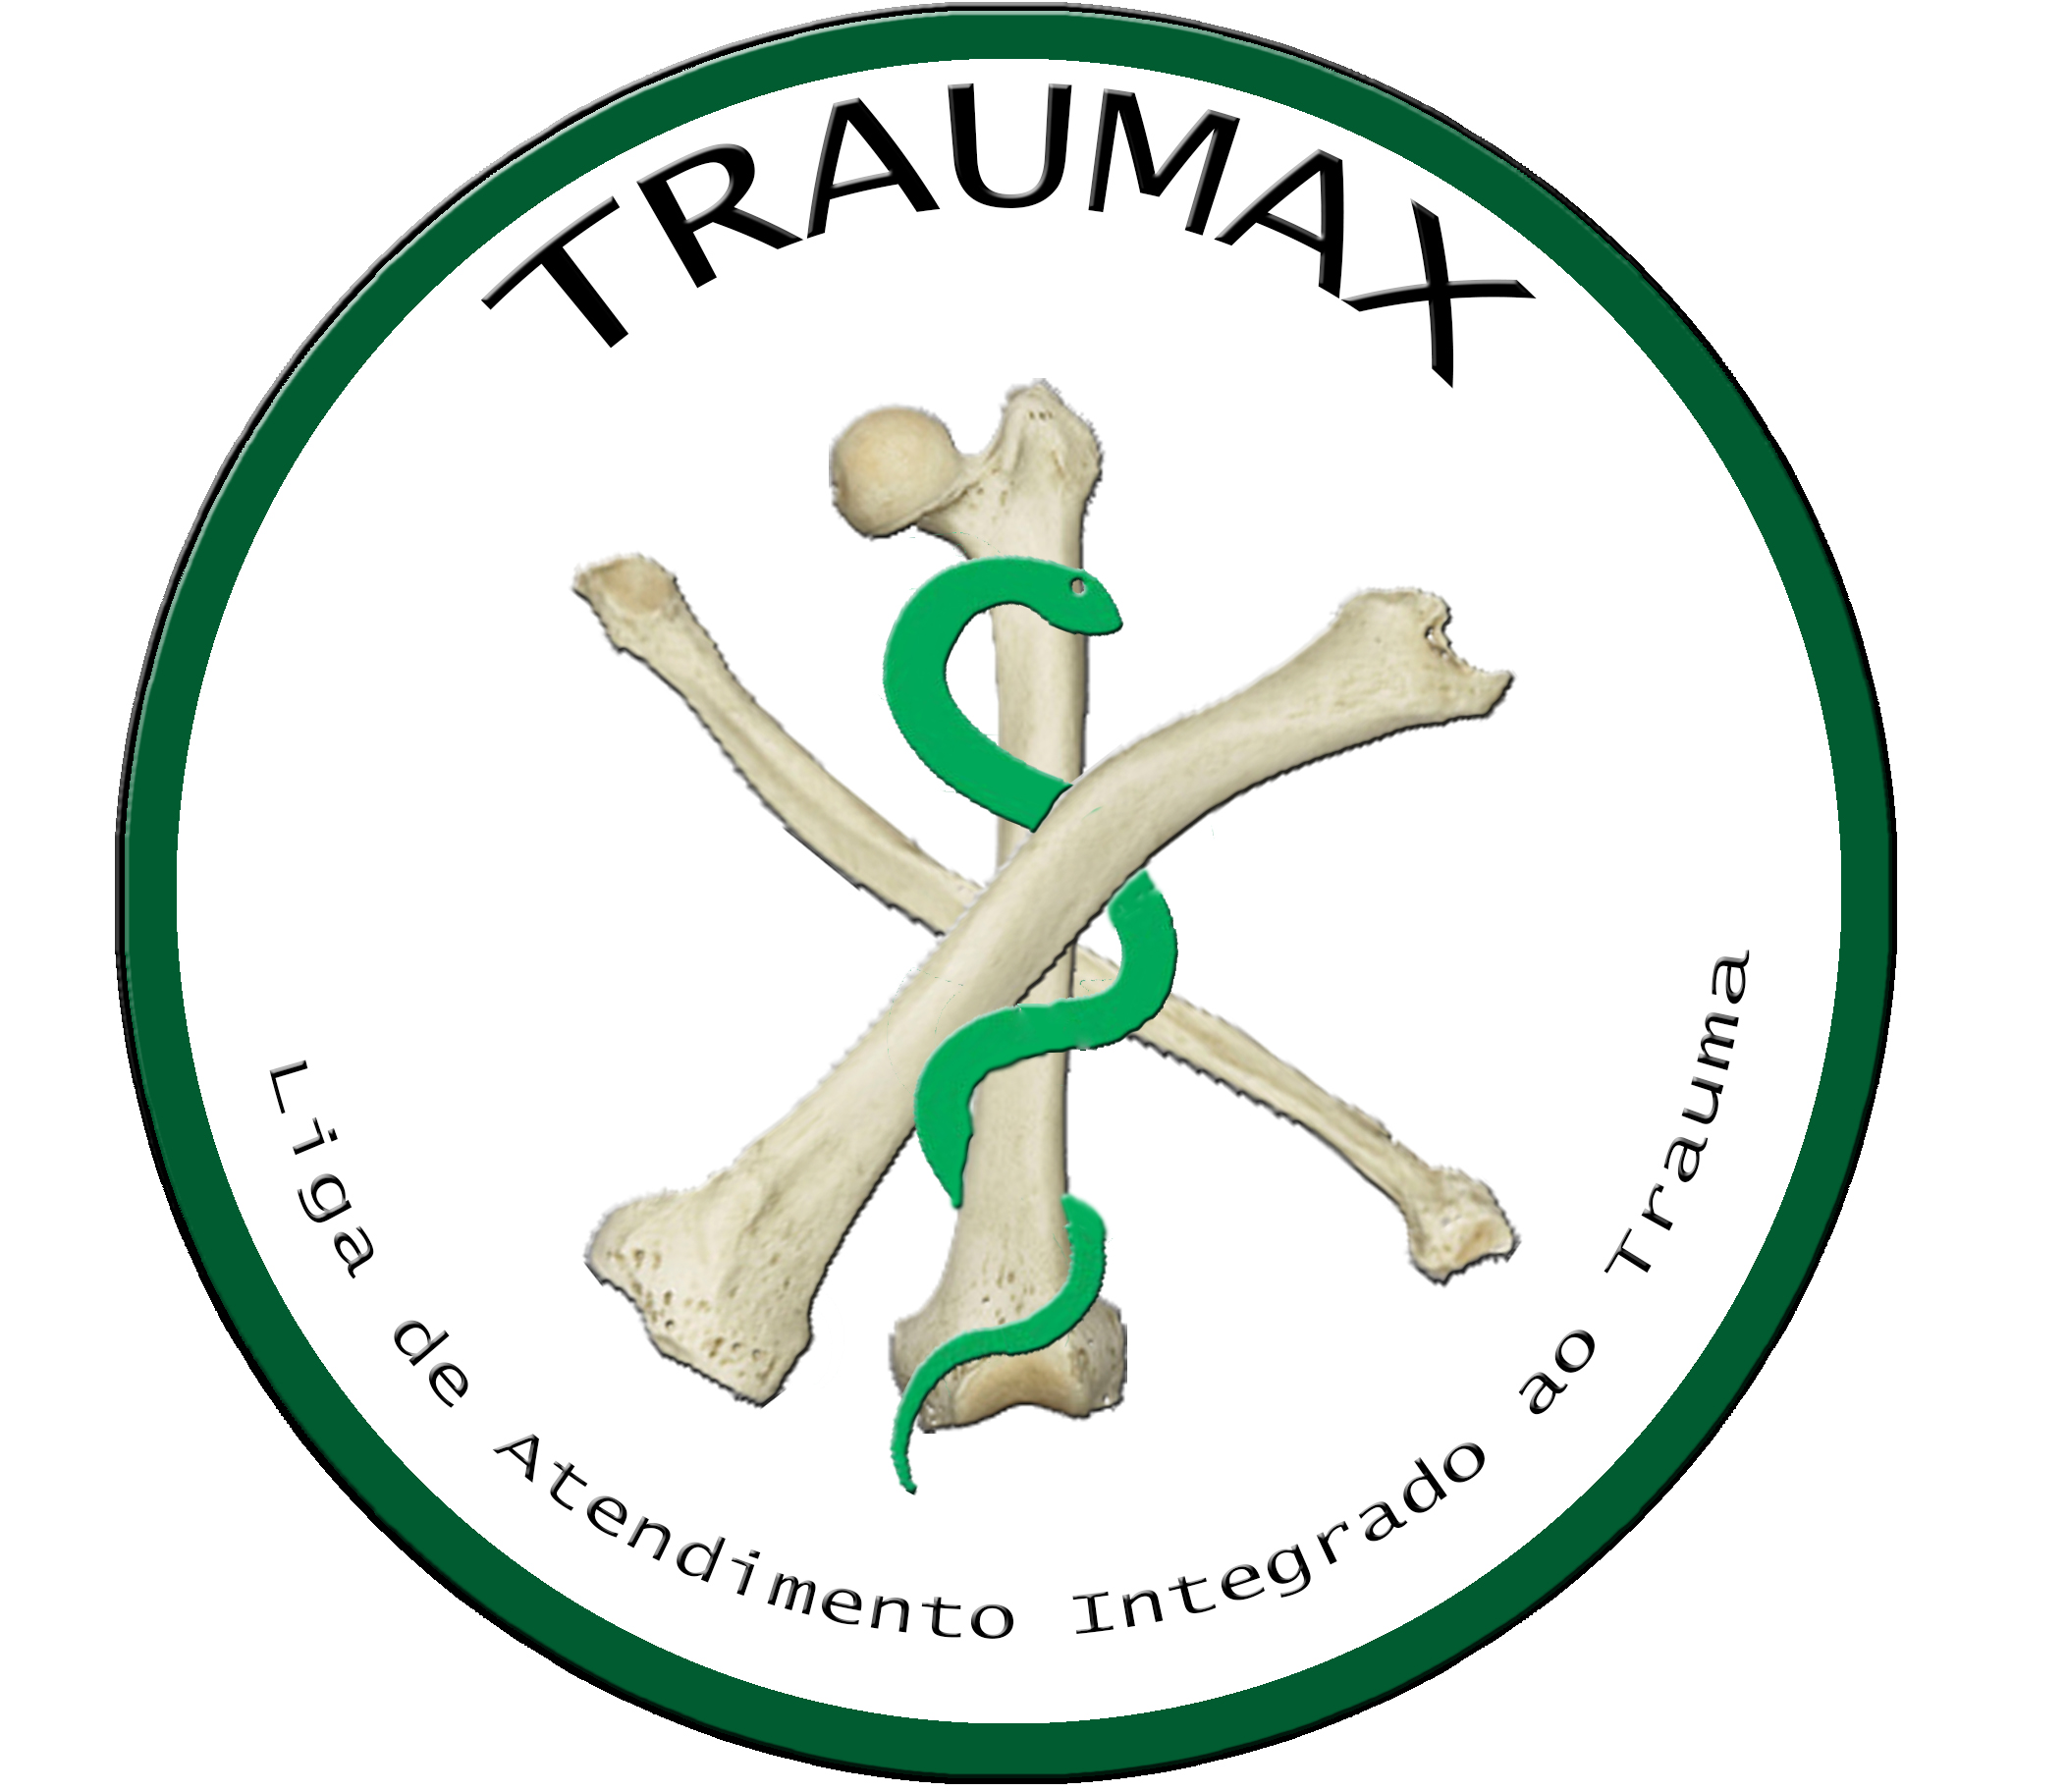 TRAUMAX – Liga de Atendimento Integrado ao Trauma